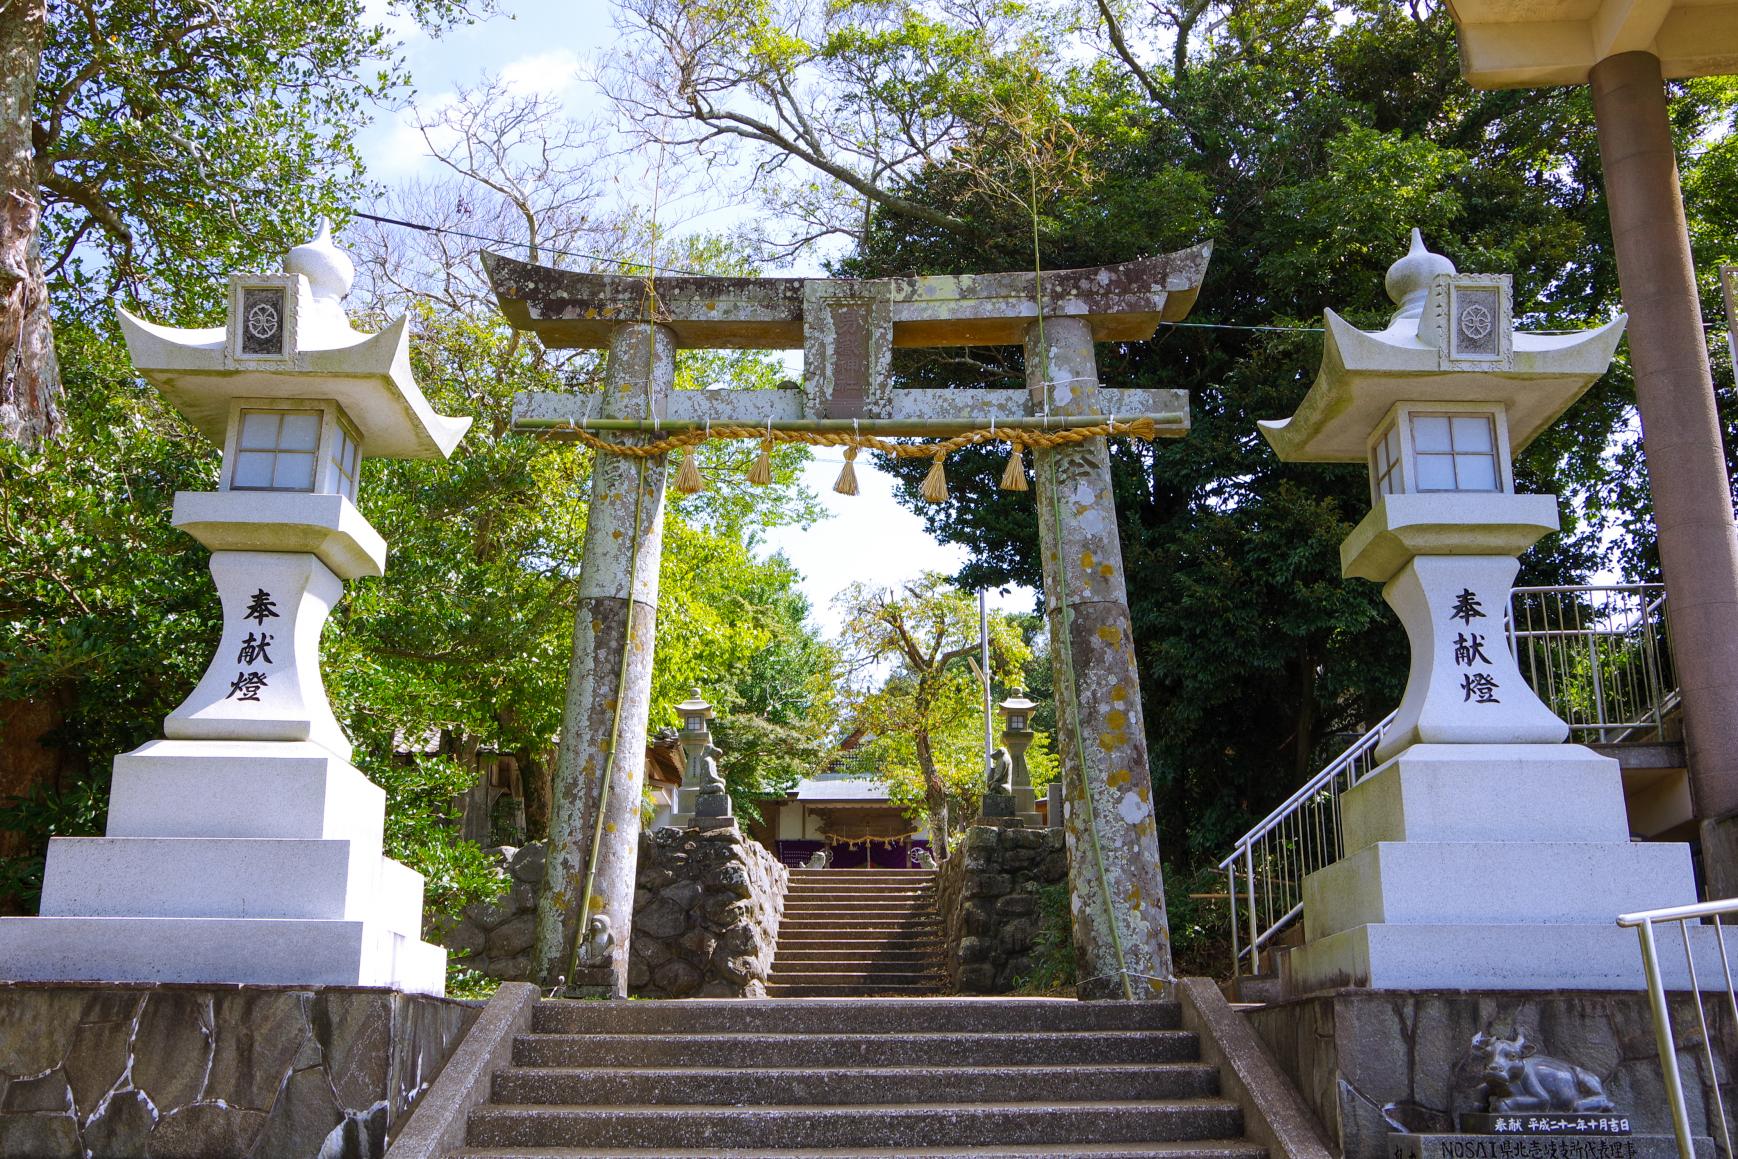 Ondake Shrine Where Many Stone Monkeys Welcome Worshippers-0